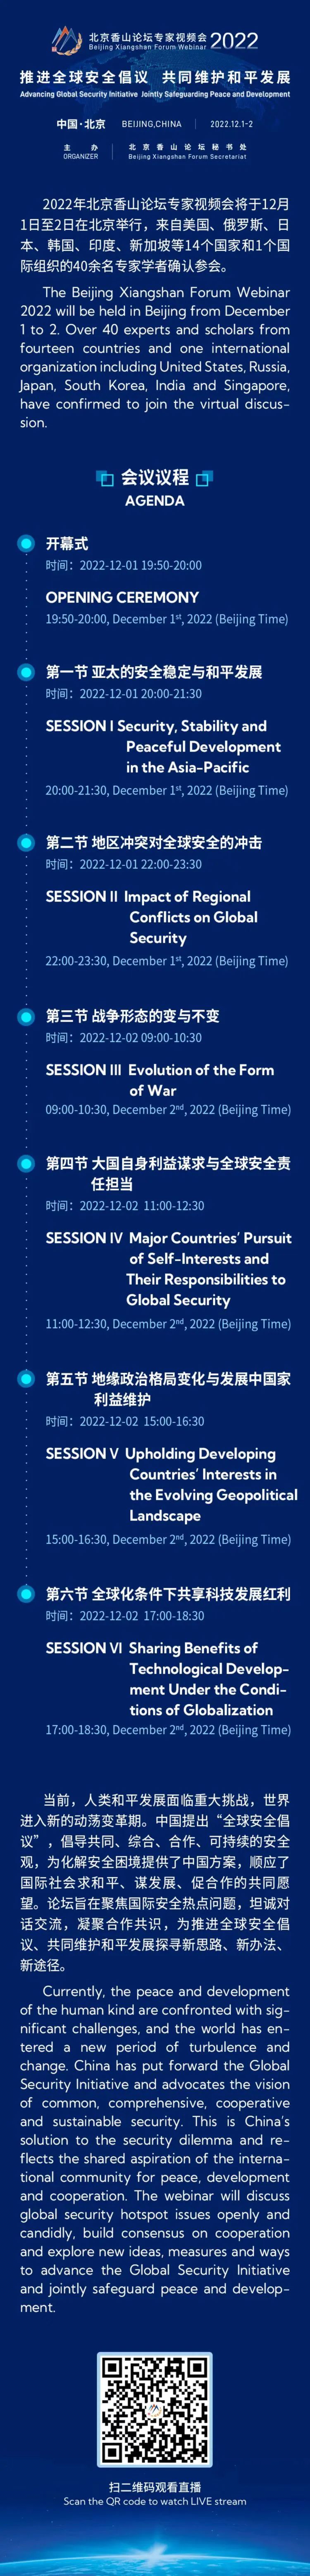 2022年北京香山论坛专家视频会议程来了！四年级用英语介绍教室并翻译